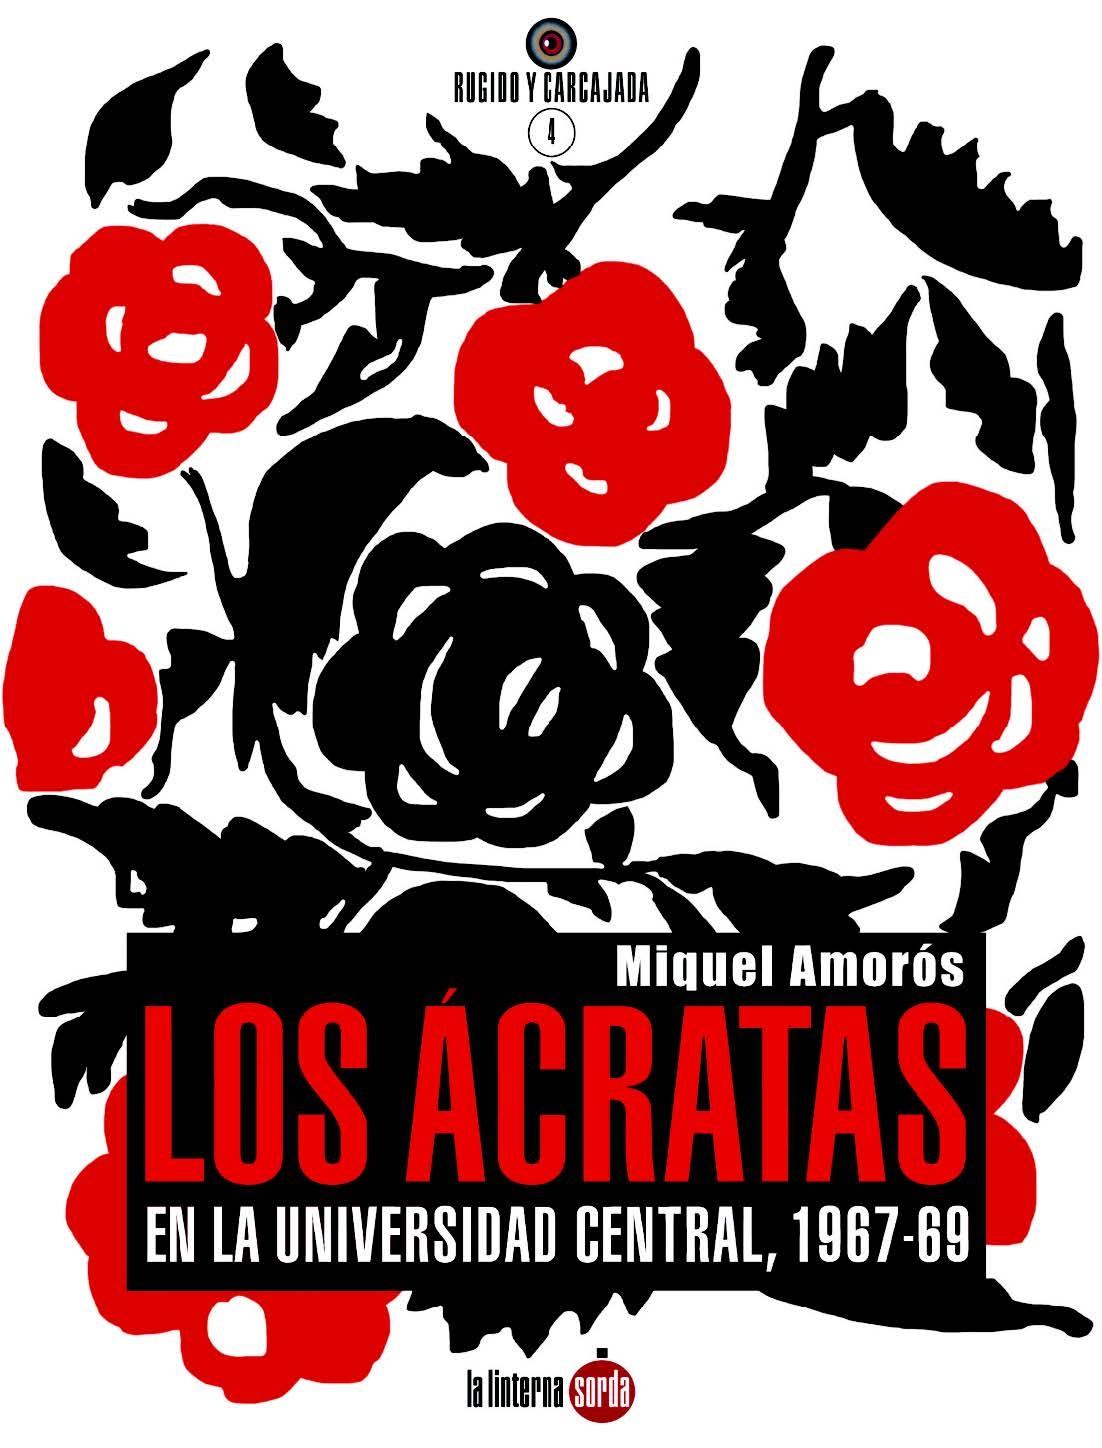 Los Ácratas en la Universidad Central, 1967-1969. 